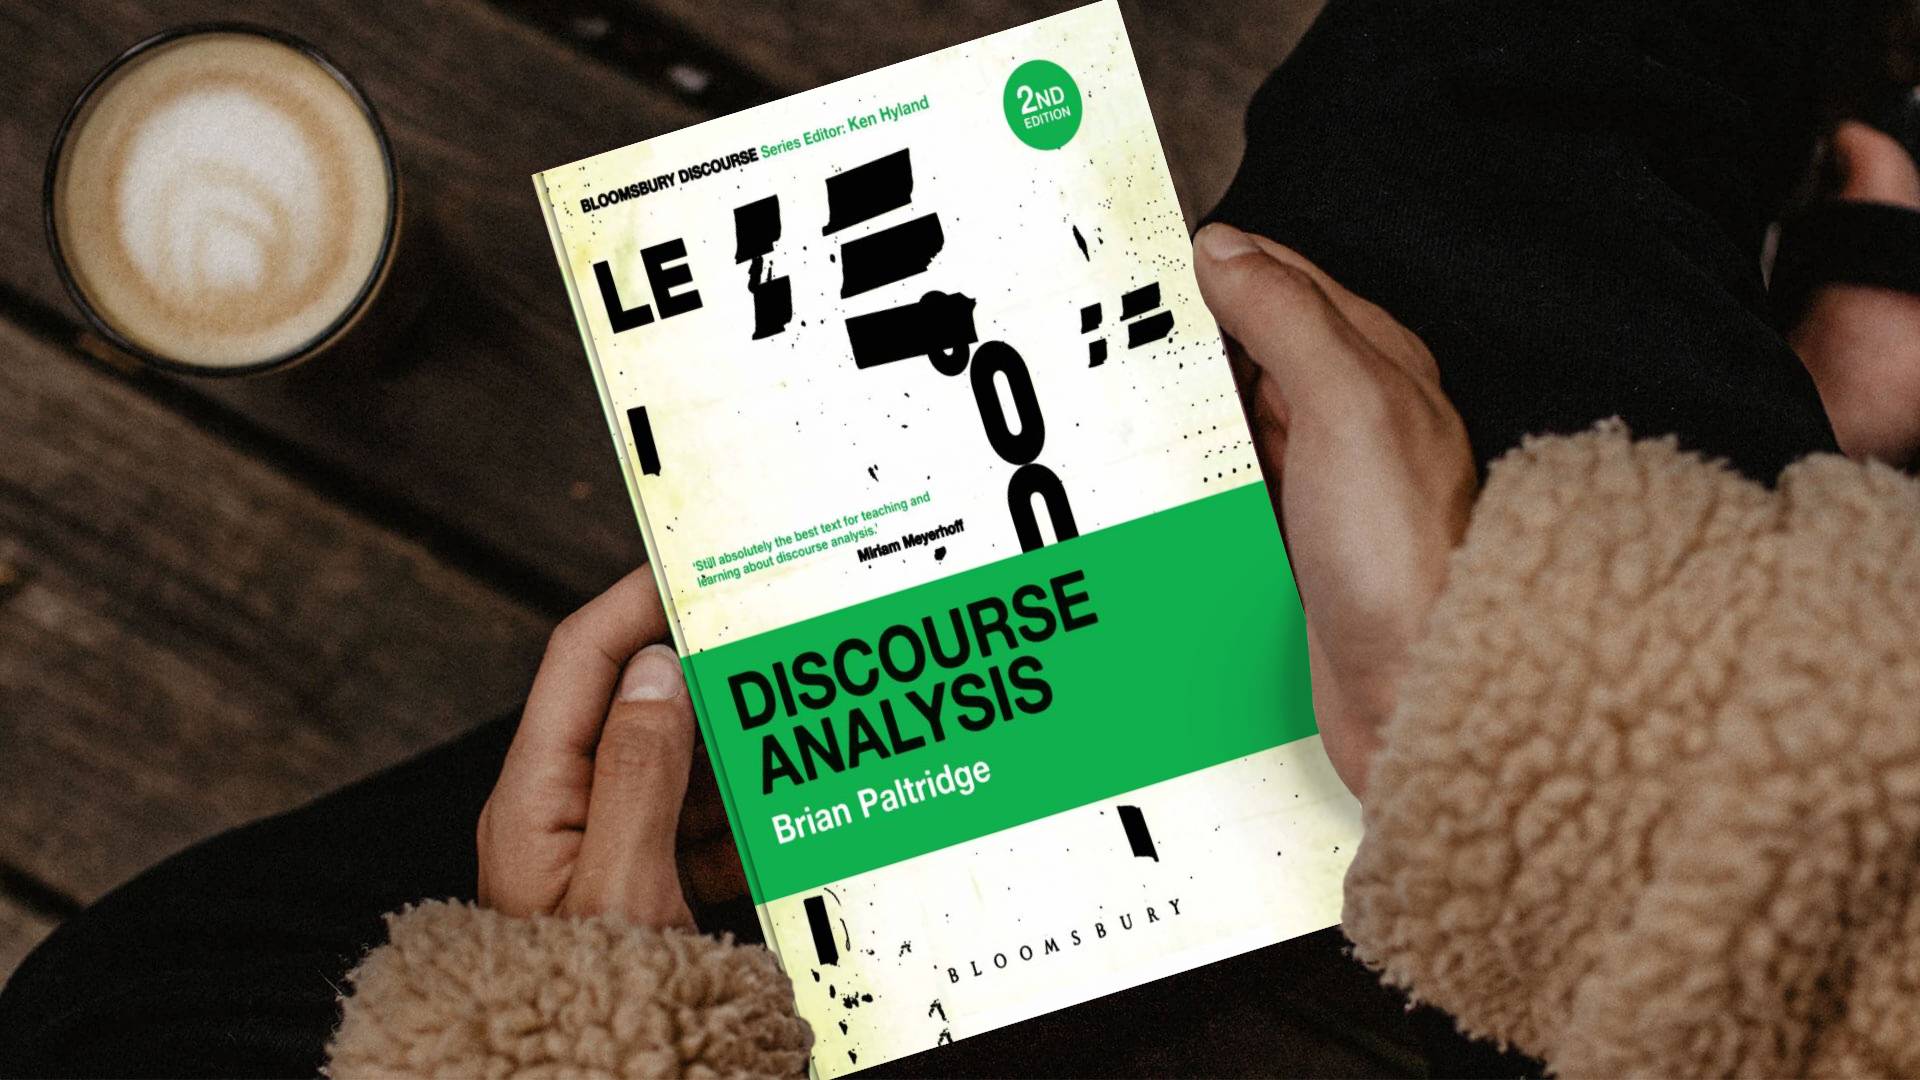 خرید کتاب زبان دانشگاهی | فروشگاه اینترنتی کتاب زبان | Discourse Analysis 2nd edition | دیسکورس آنالیز ویرایش دوم